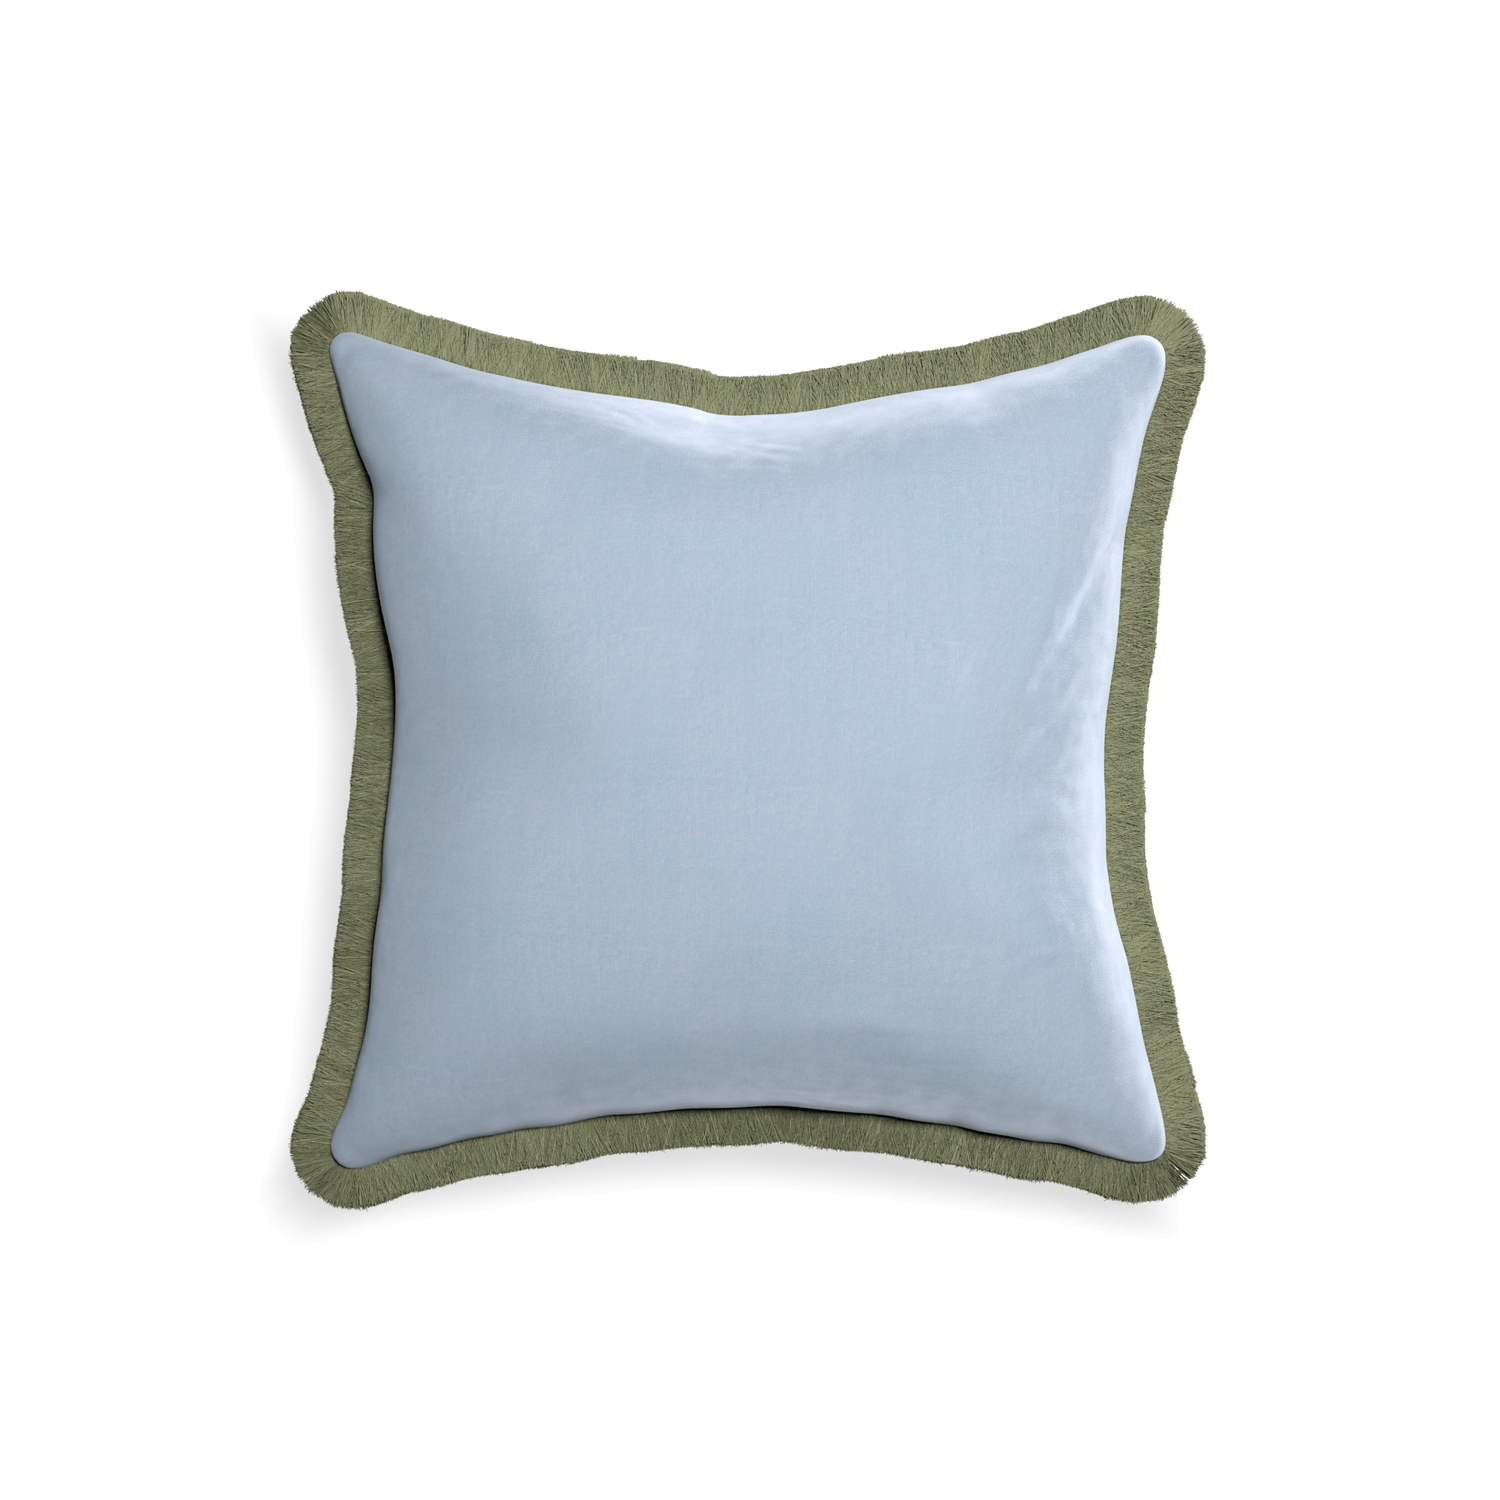 square light blue velvet pillow with sage green fringe